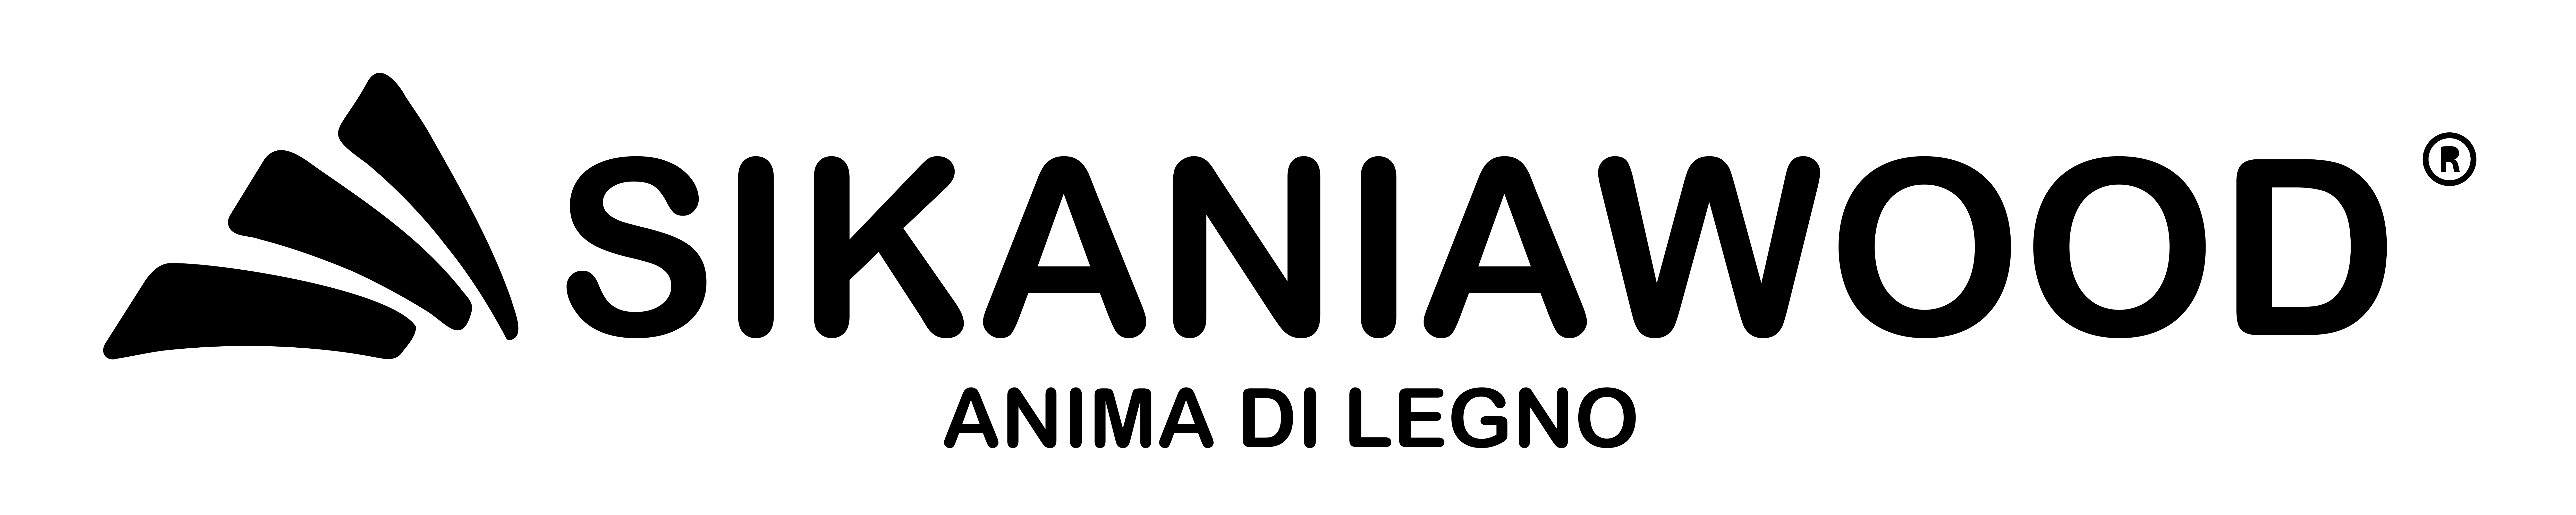 logo-sikaniawood